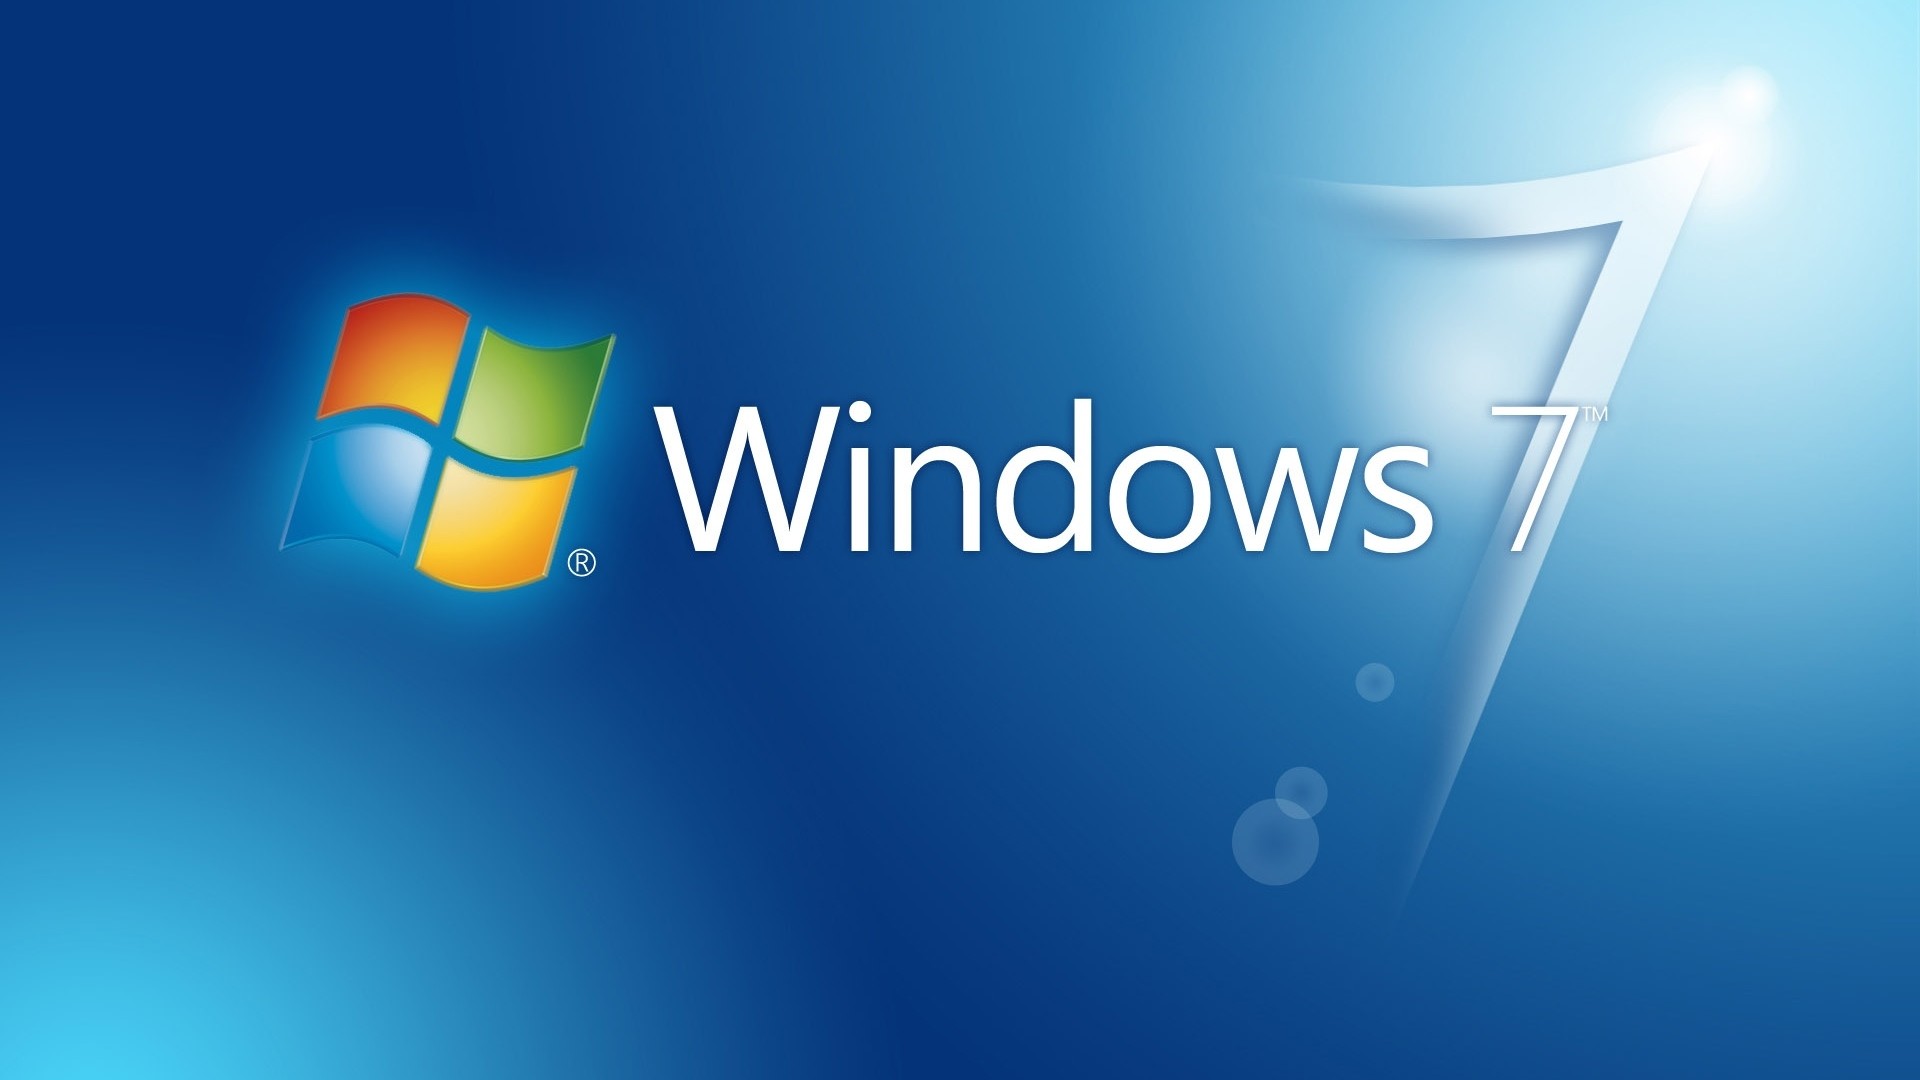 Dùng hình nền Windows 7 HD 1920x1080 đẹp mắt để làm nền tảng cho máy tính của bạn. Với chất lượng hình ảnh cao và nhiều lựa chọn, bạn sẽ dễ dàng tìm kiếm hình nền phù hợp nhất cho màn hình máy tính của mình.